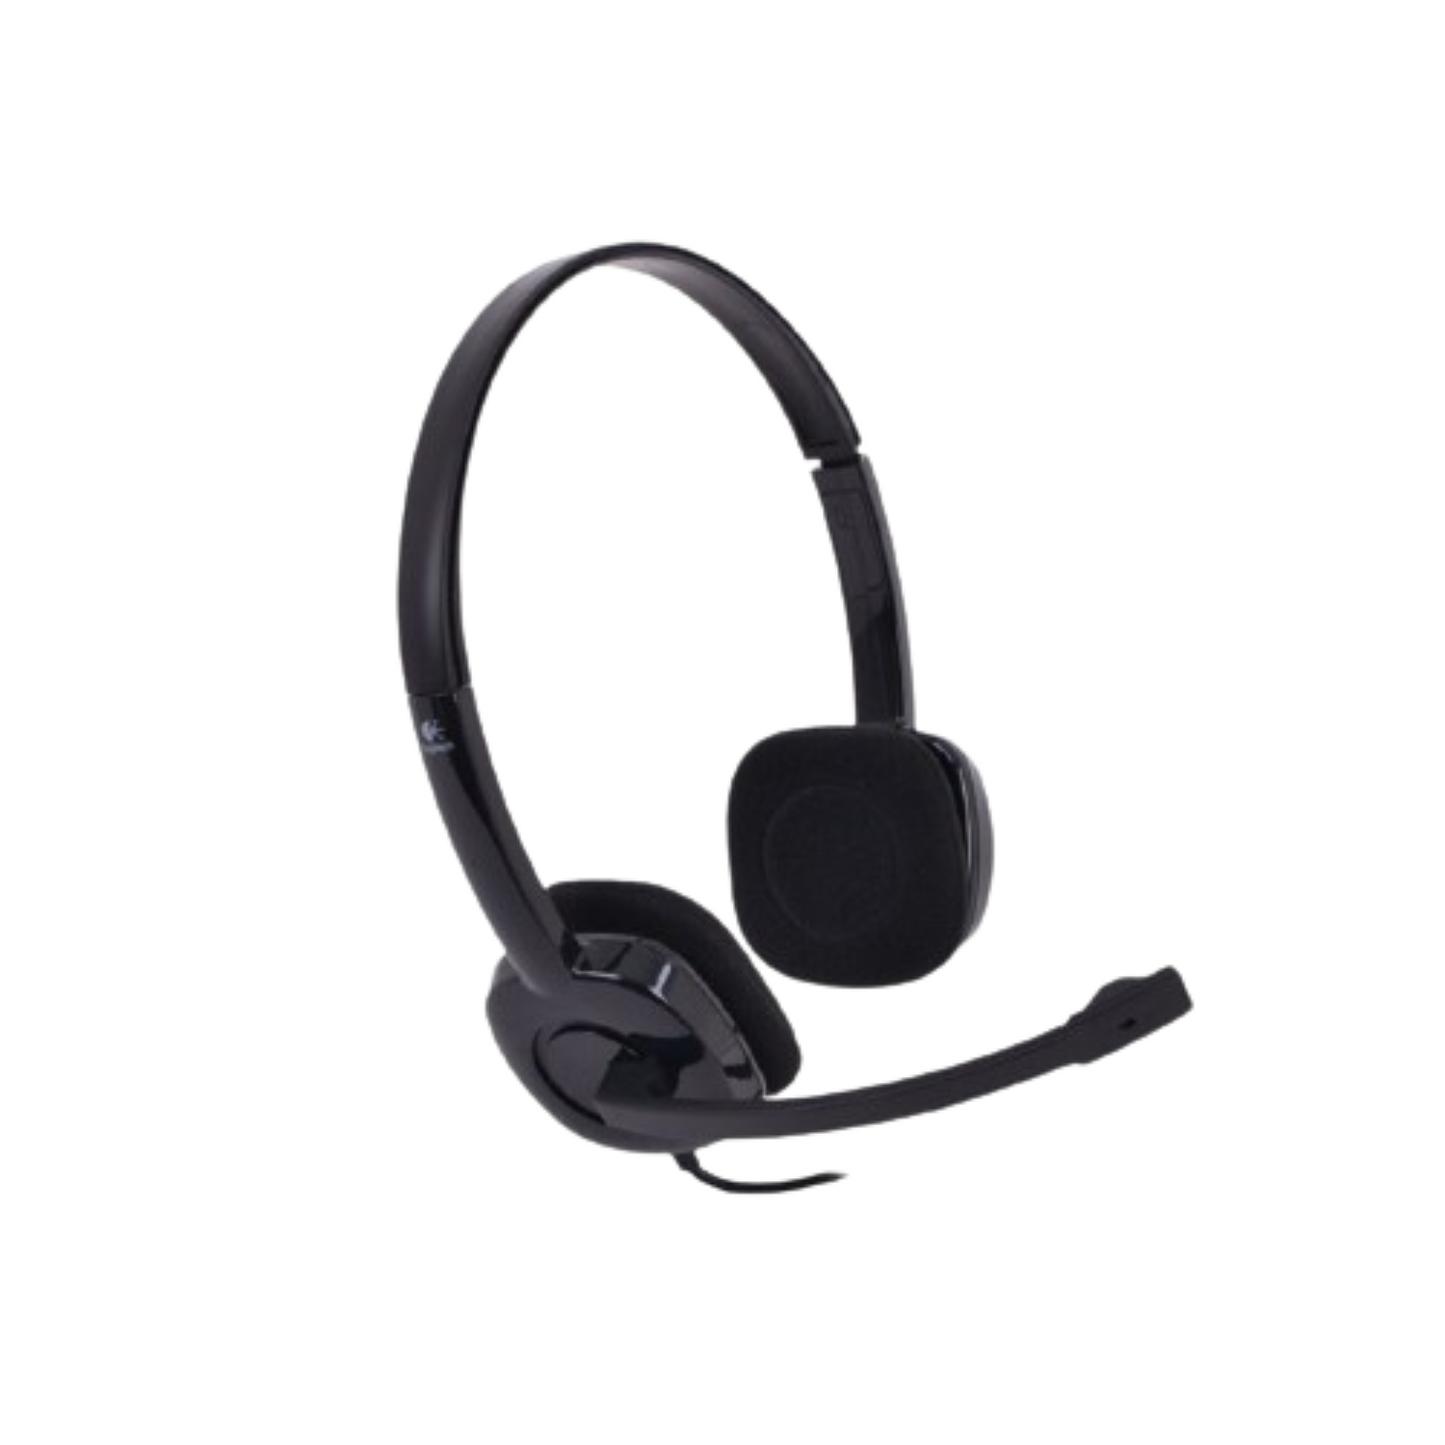 Logitech H151 Headset